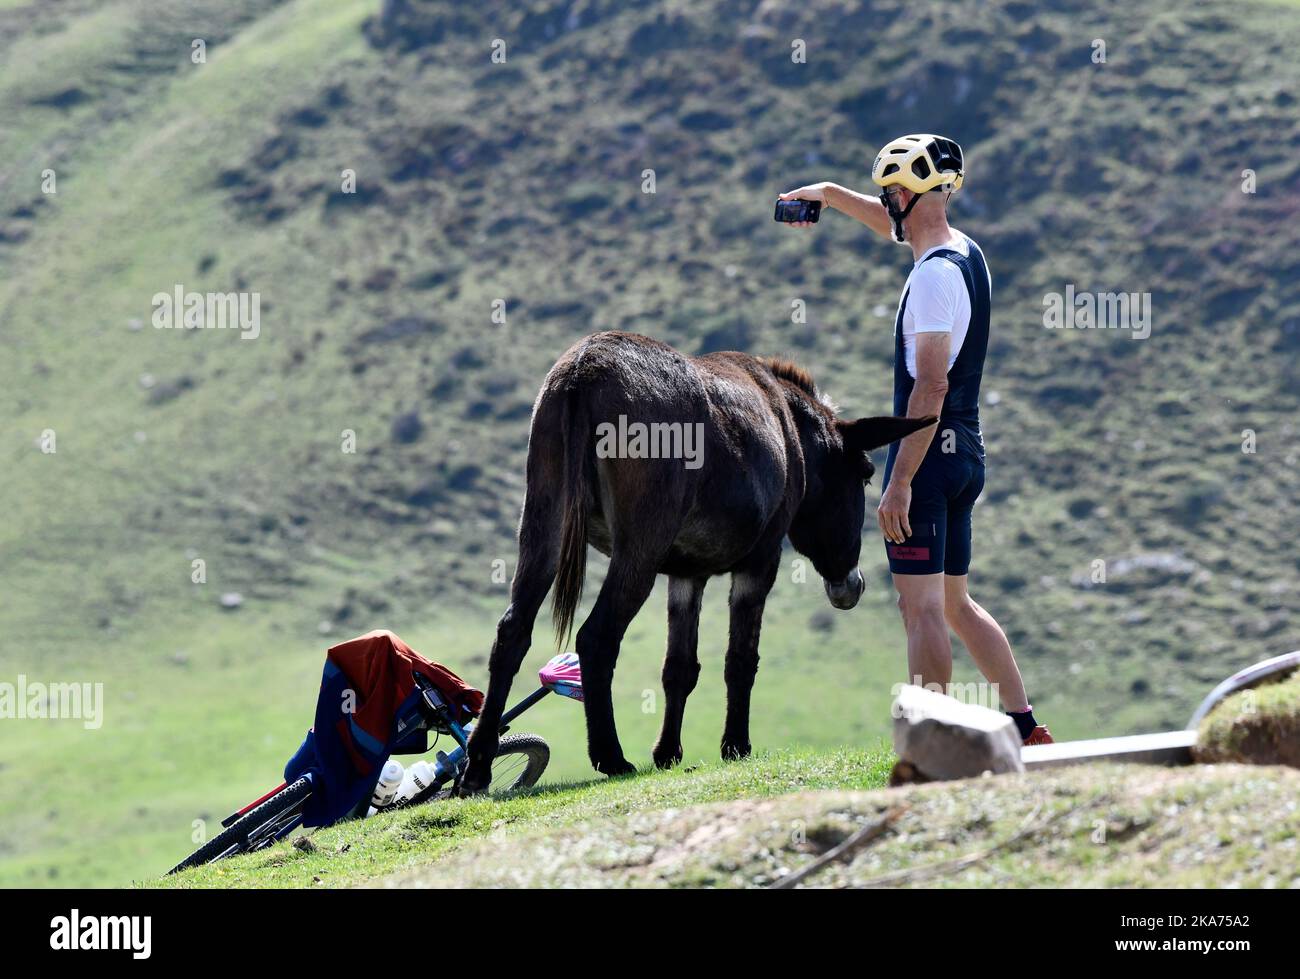 Cycliste prenant une photo de selfie avec un âne semi-sauvage sur le col du Soulor dans les pyrénées, en bordure de la France et de l'Espagne Banque D'Images